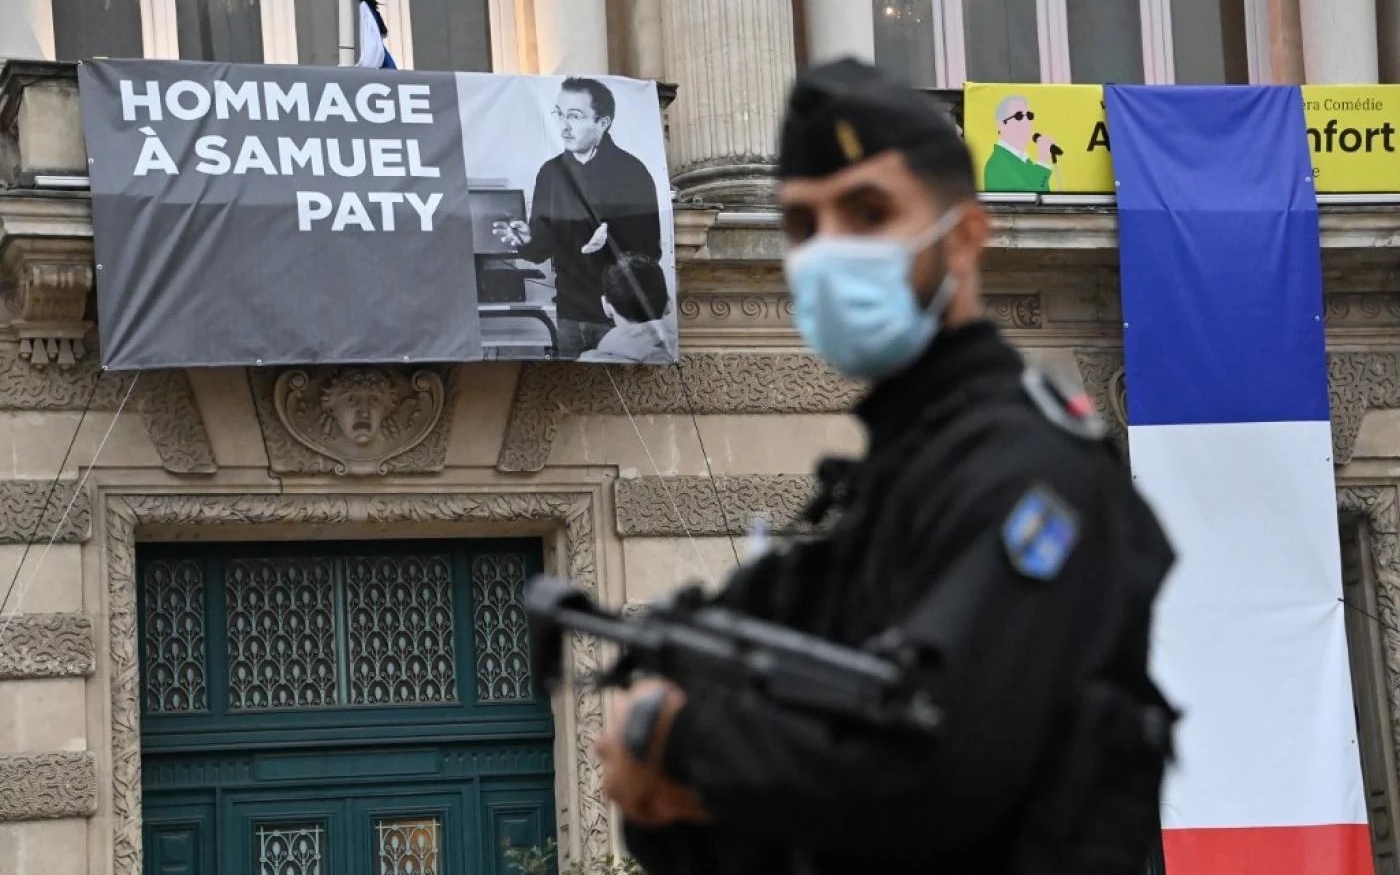 Le meurtre de Samuel Paty, père et enseignant de 47 ans, par ce qui semble être un extrémiste musulman, a ébranlé la France (AFP)